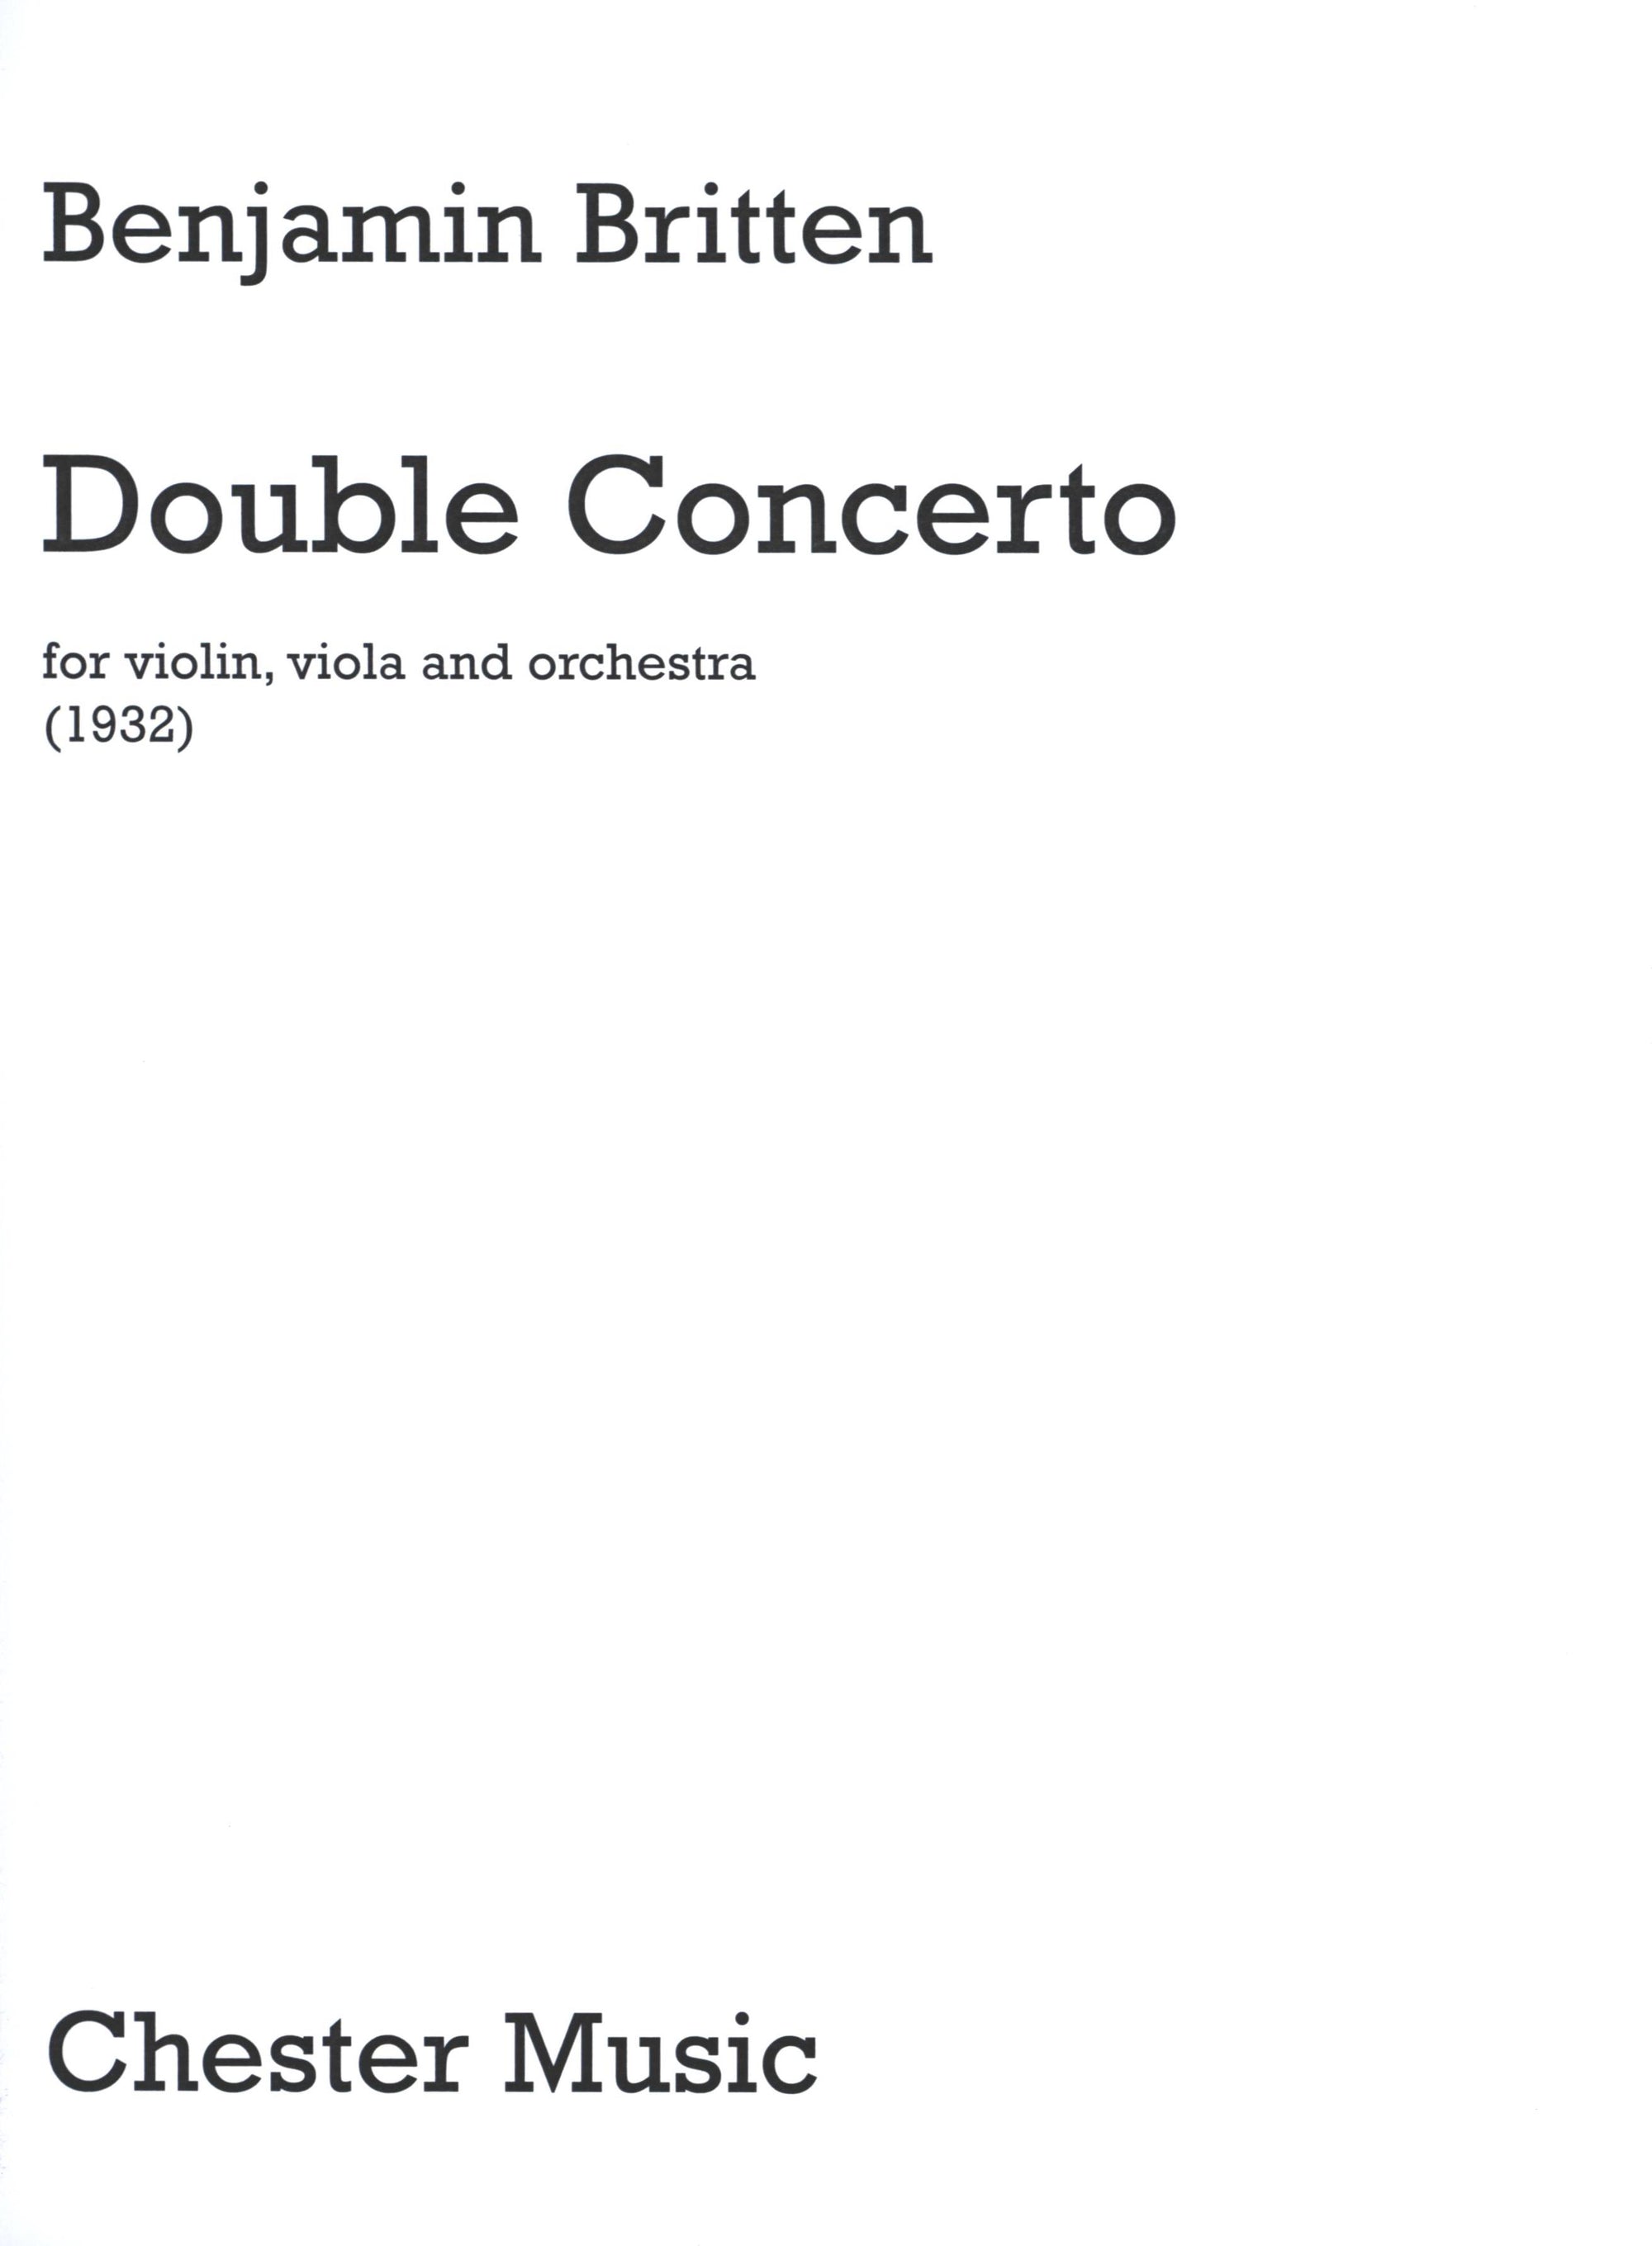 Britten: Double Concerto for Violin and Viola